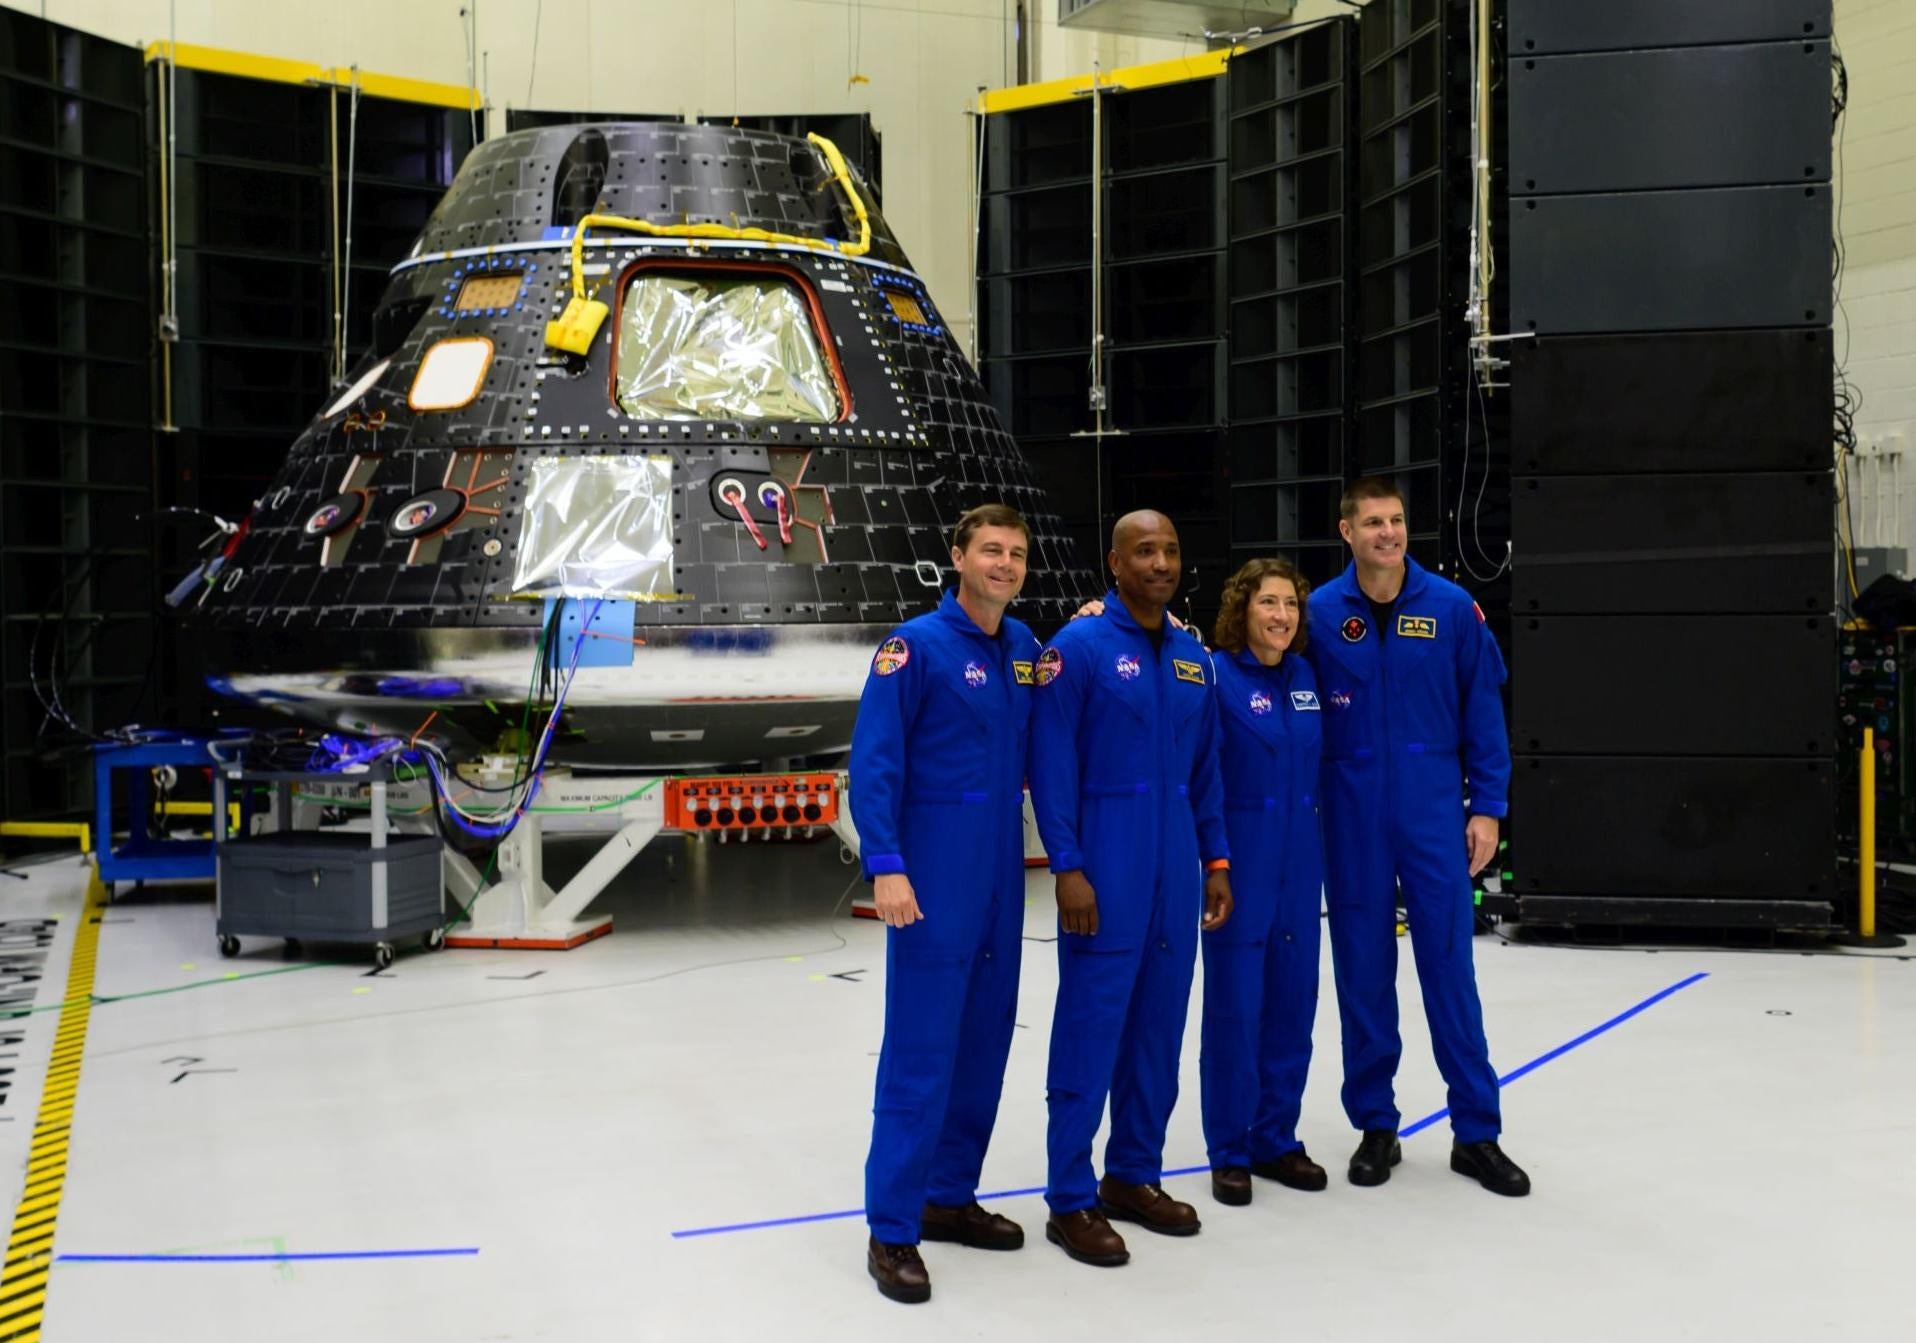 طاقم أرتميس 2 يقف مع مركبة أوريون الفضائية في مركز كينيدي للفضاء التابع لناسا في فلوريدا.